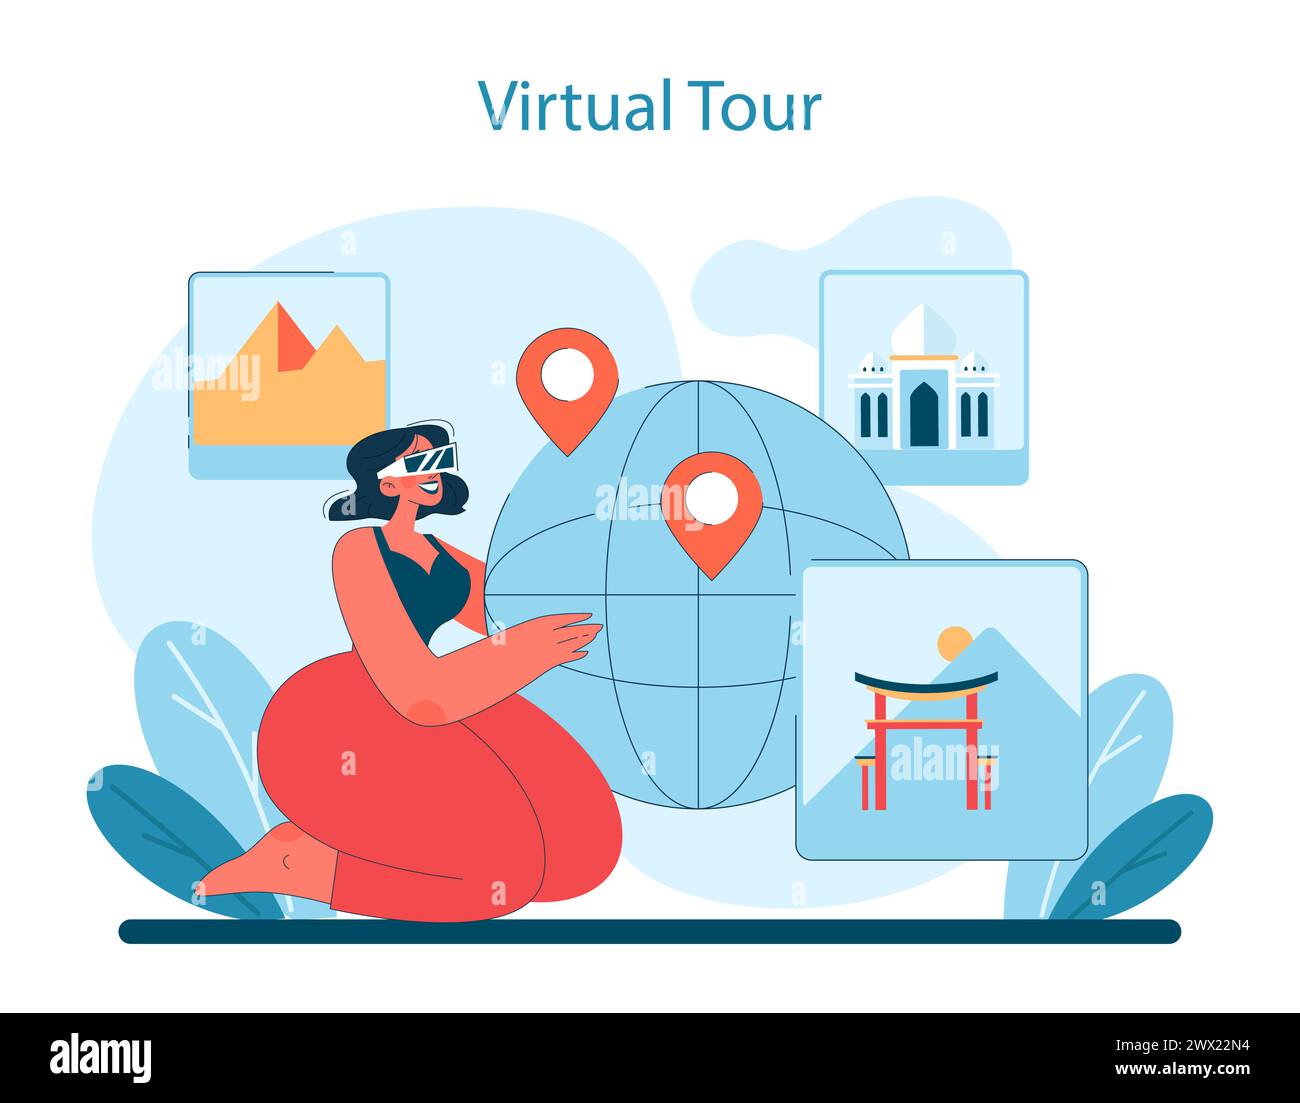 Virtual Tour-Konzept. Frau navigiert mit virtueller Realität durch globale Wahrzeichen von Pyramiden bis zu Palästen und bereichert Reisen von zu Hause aus. Vektorabbildung. Stock Vektor